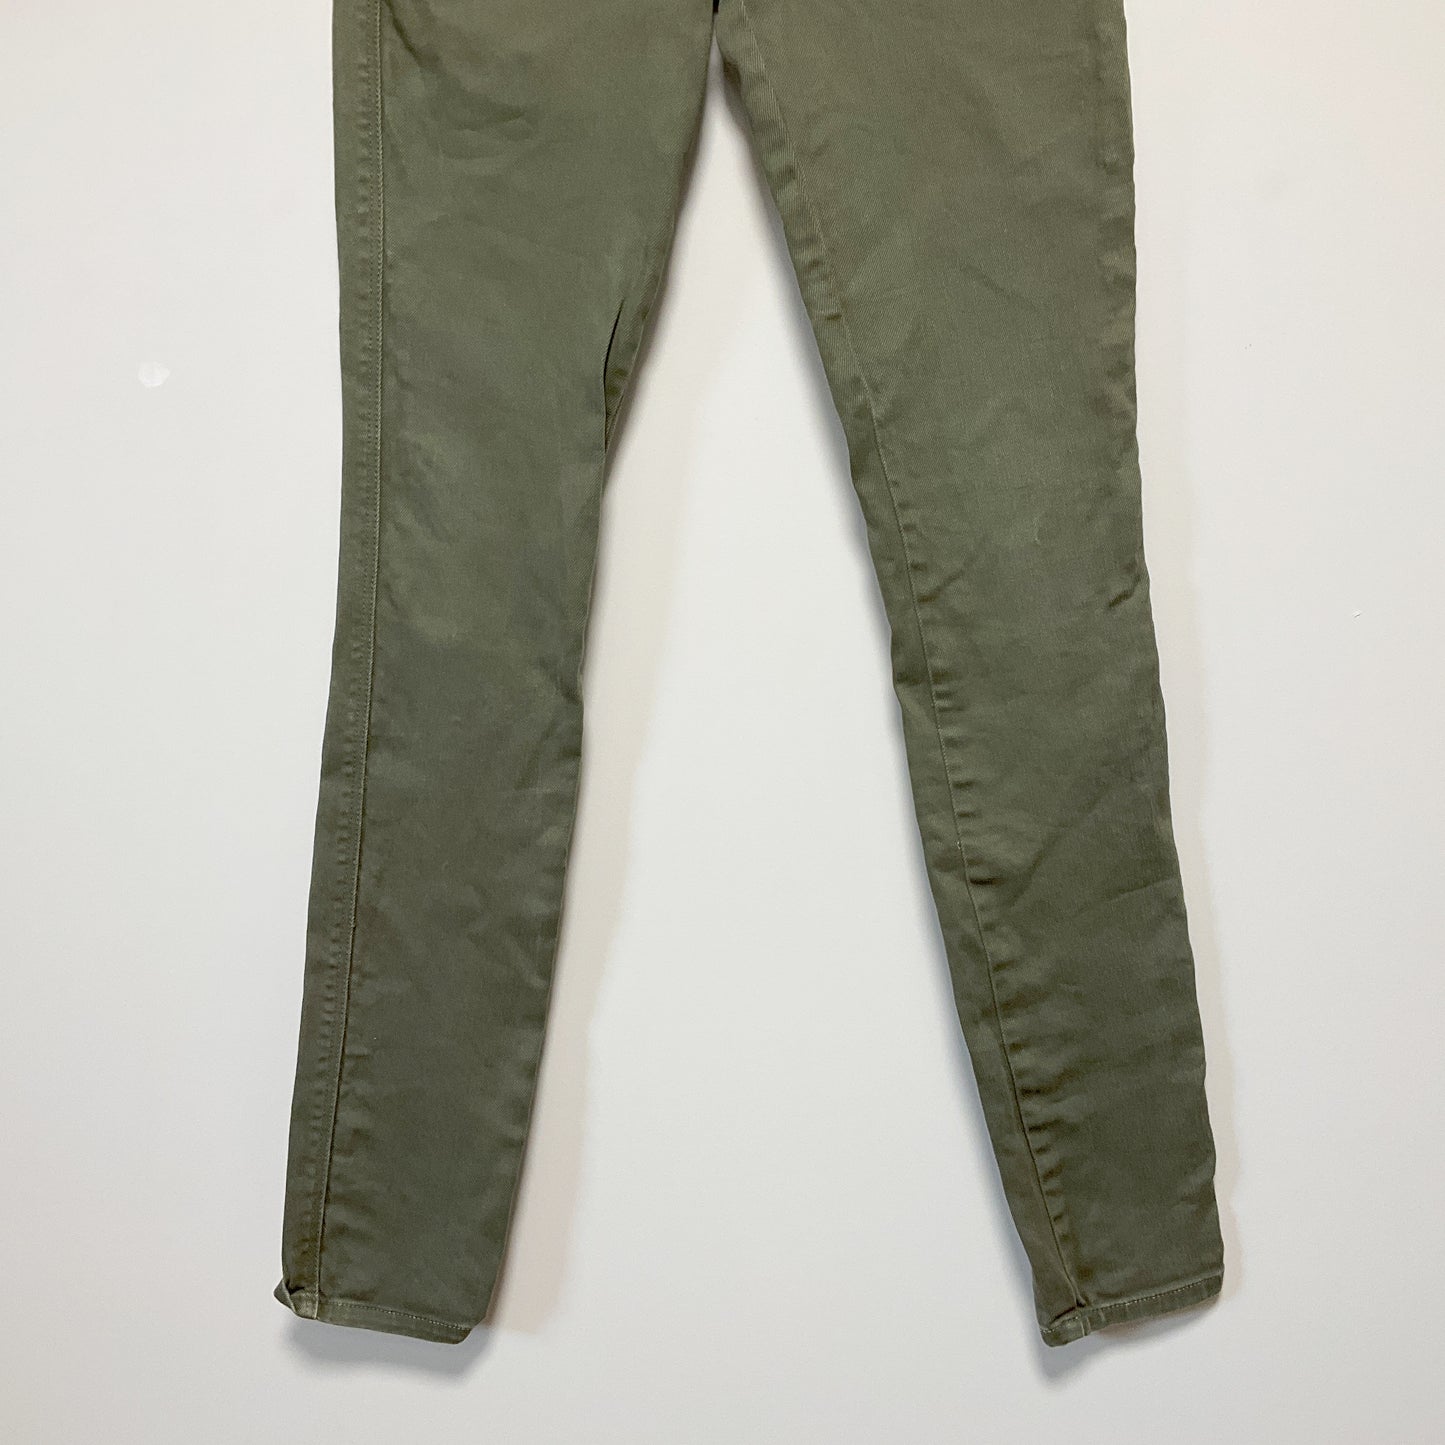 Ksubi - Skinny Pin Fatigues Green Jeans